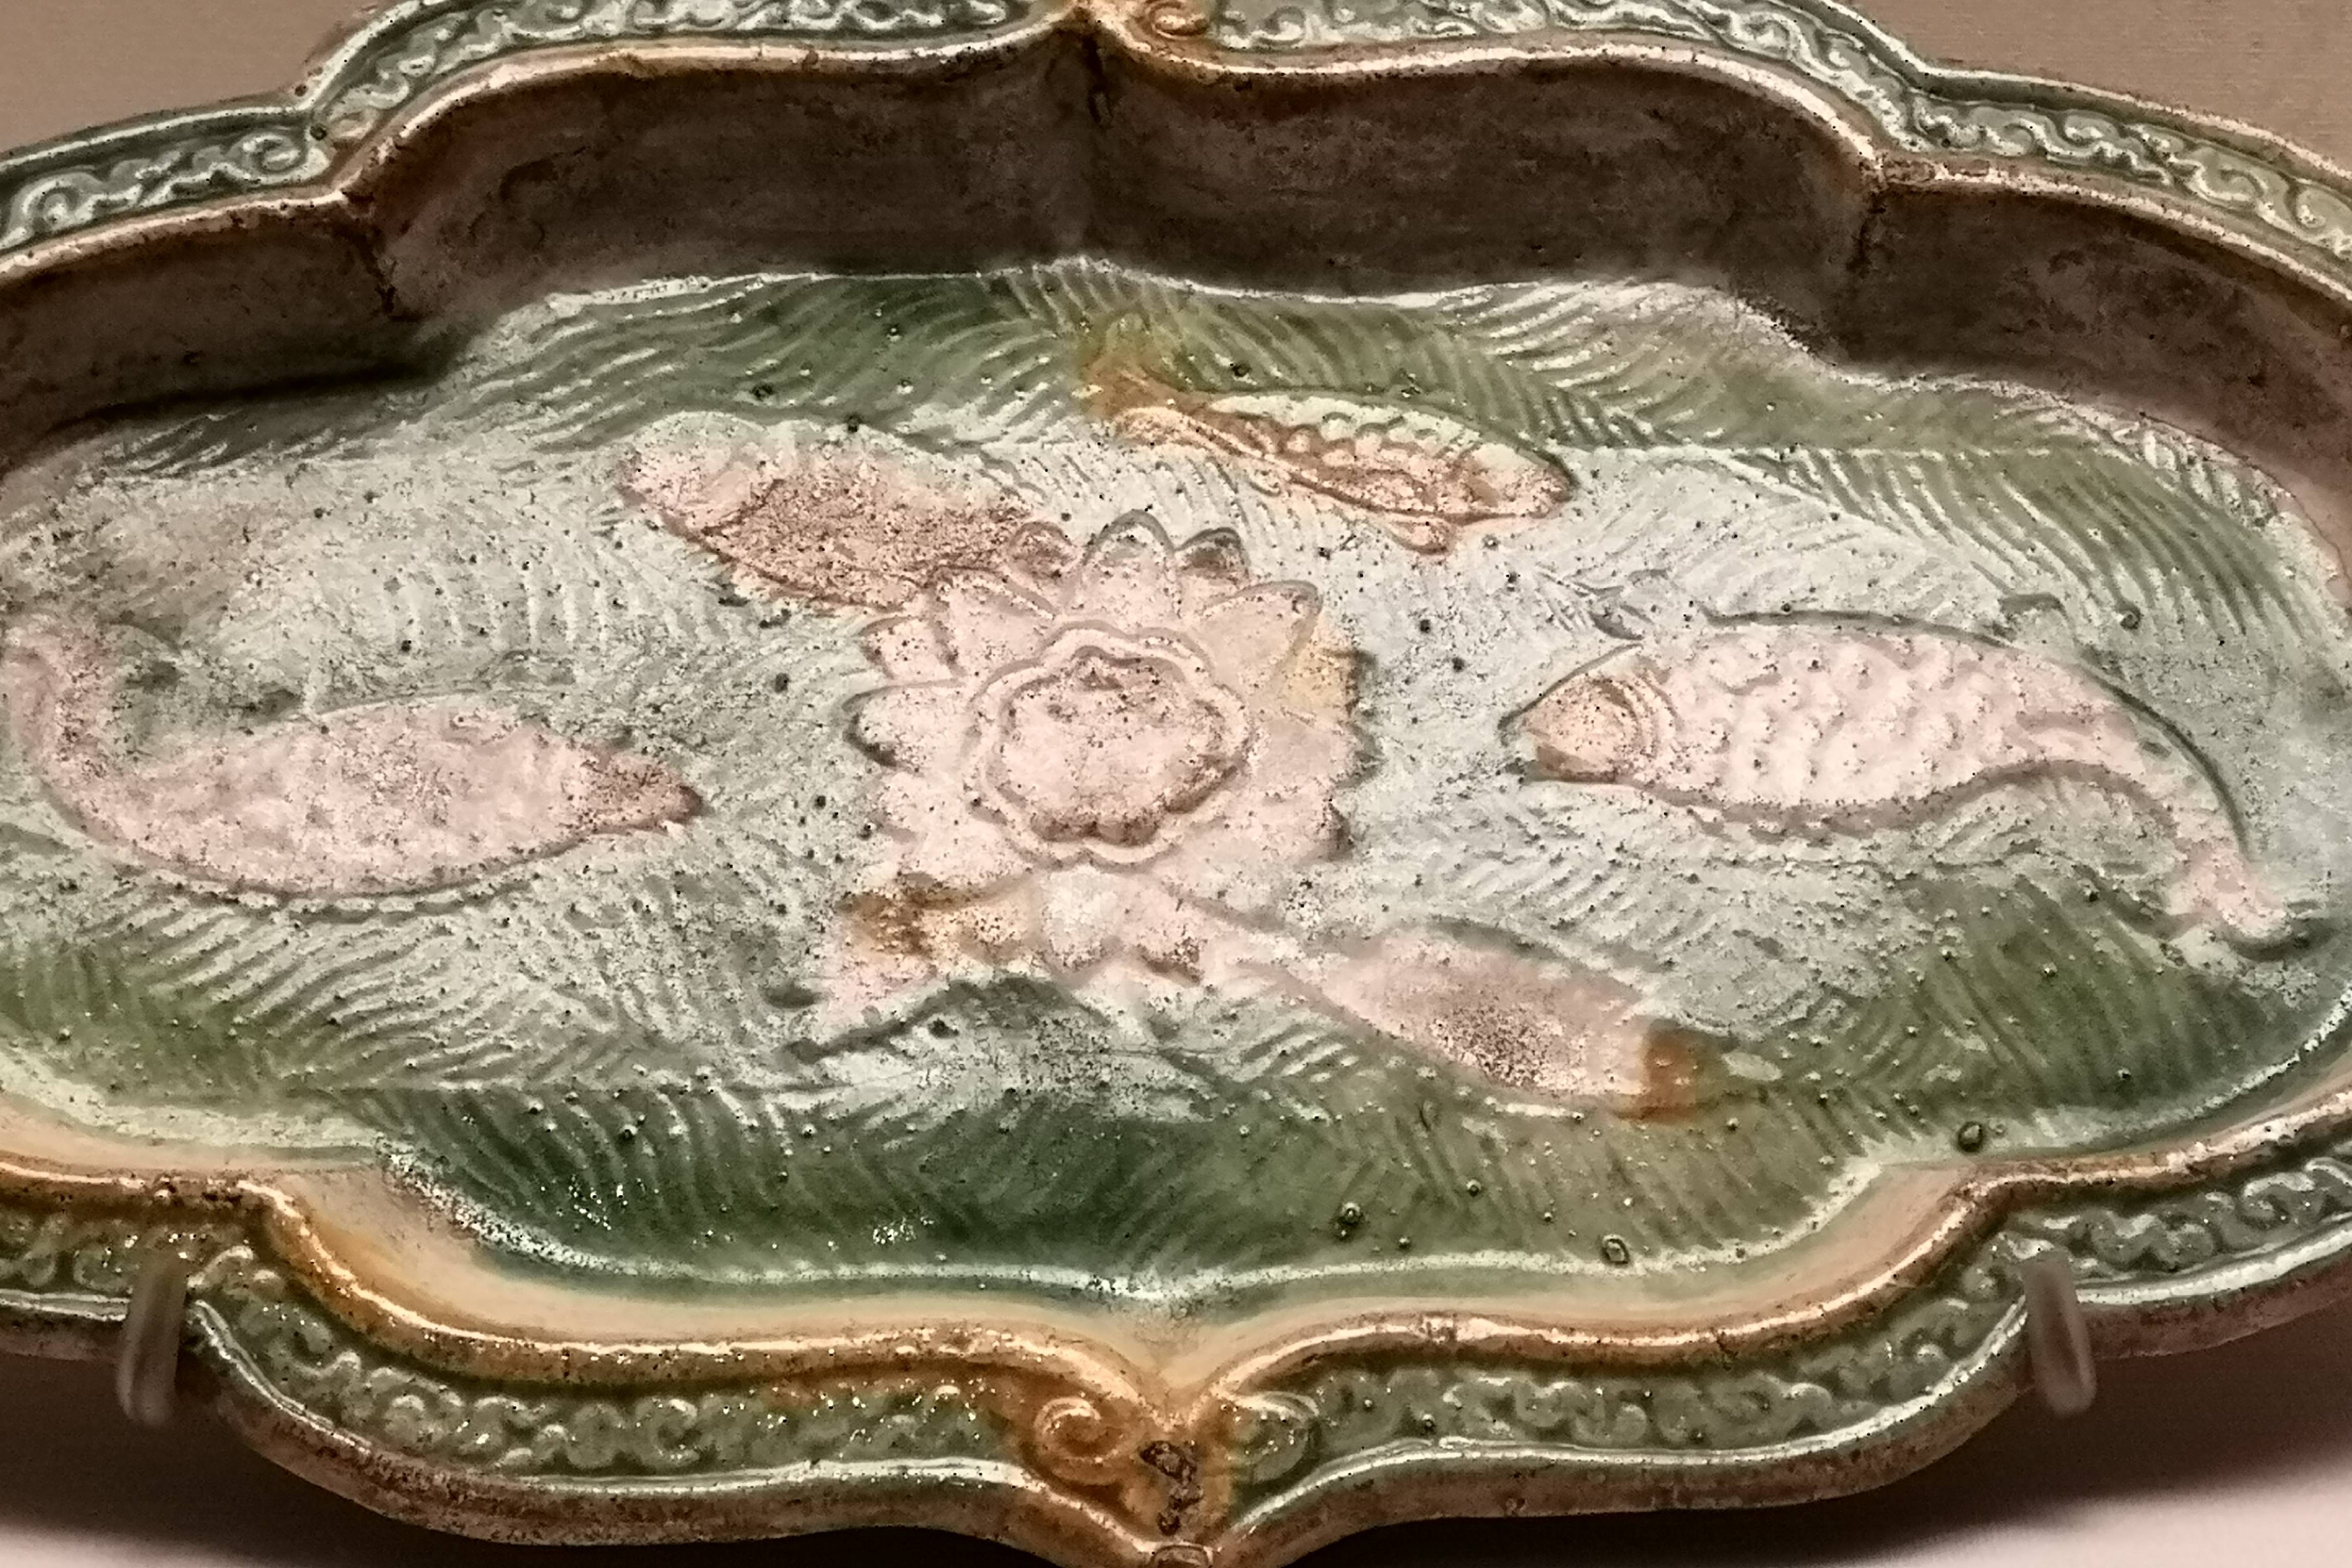 中国古代陶瓷瑰宝——辽三彩釉印花游鱼海棠式长盘,国家博物馆藏